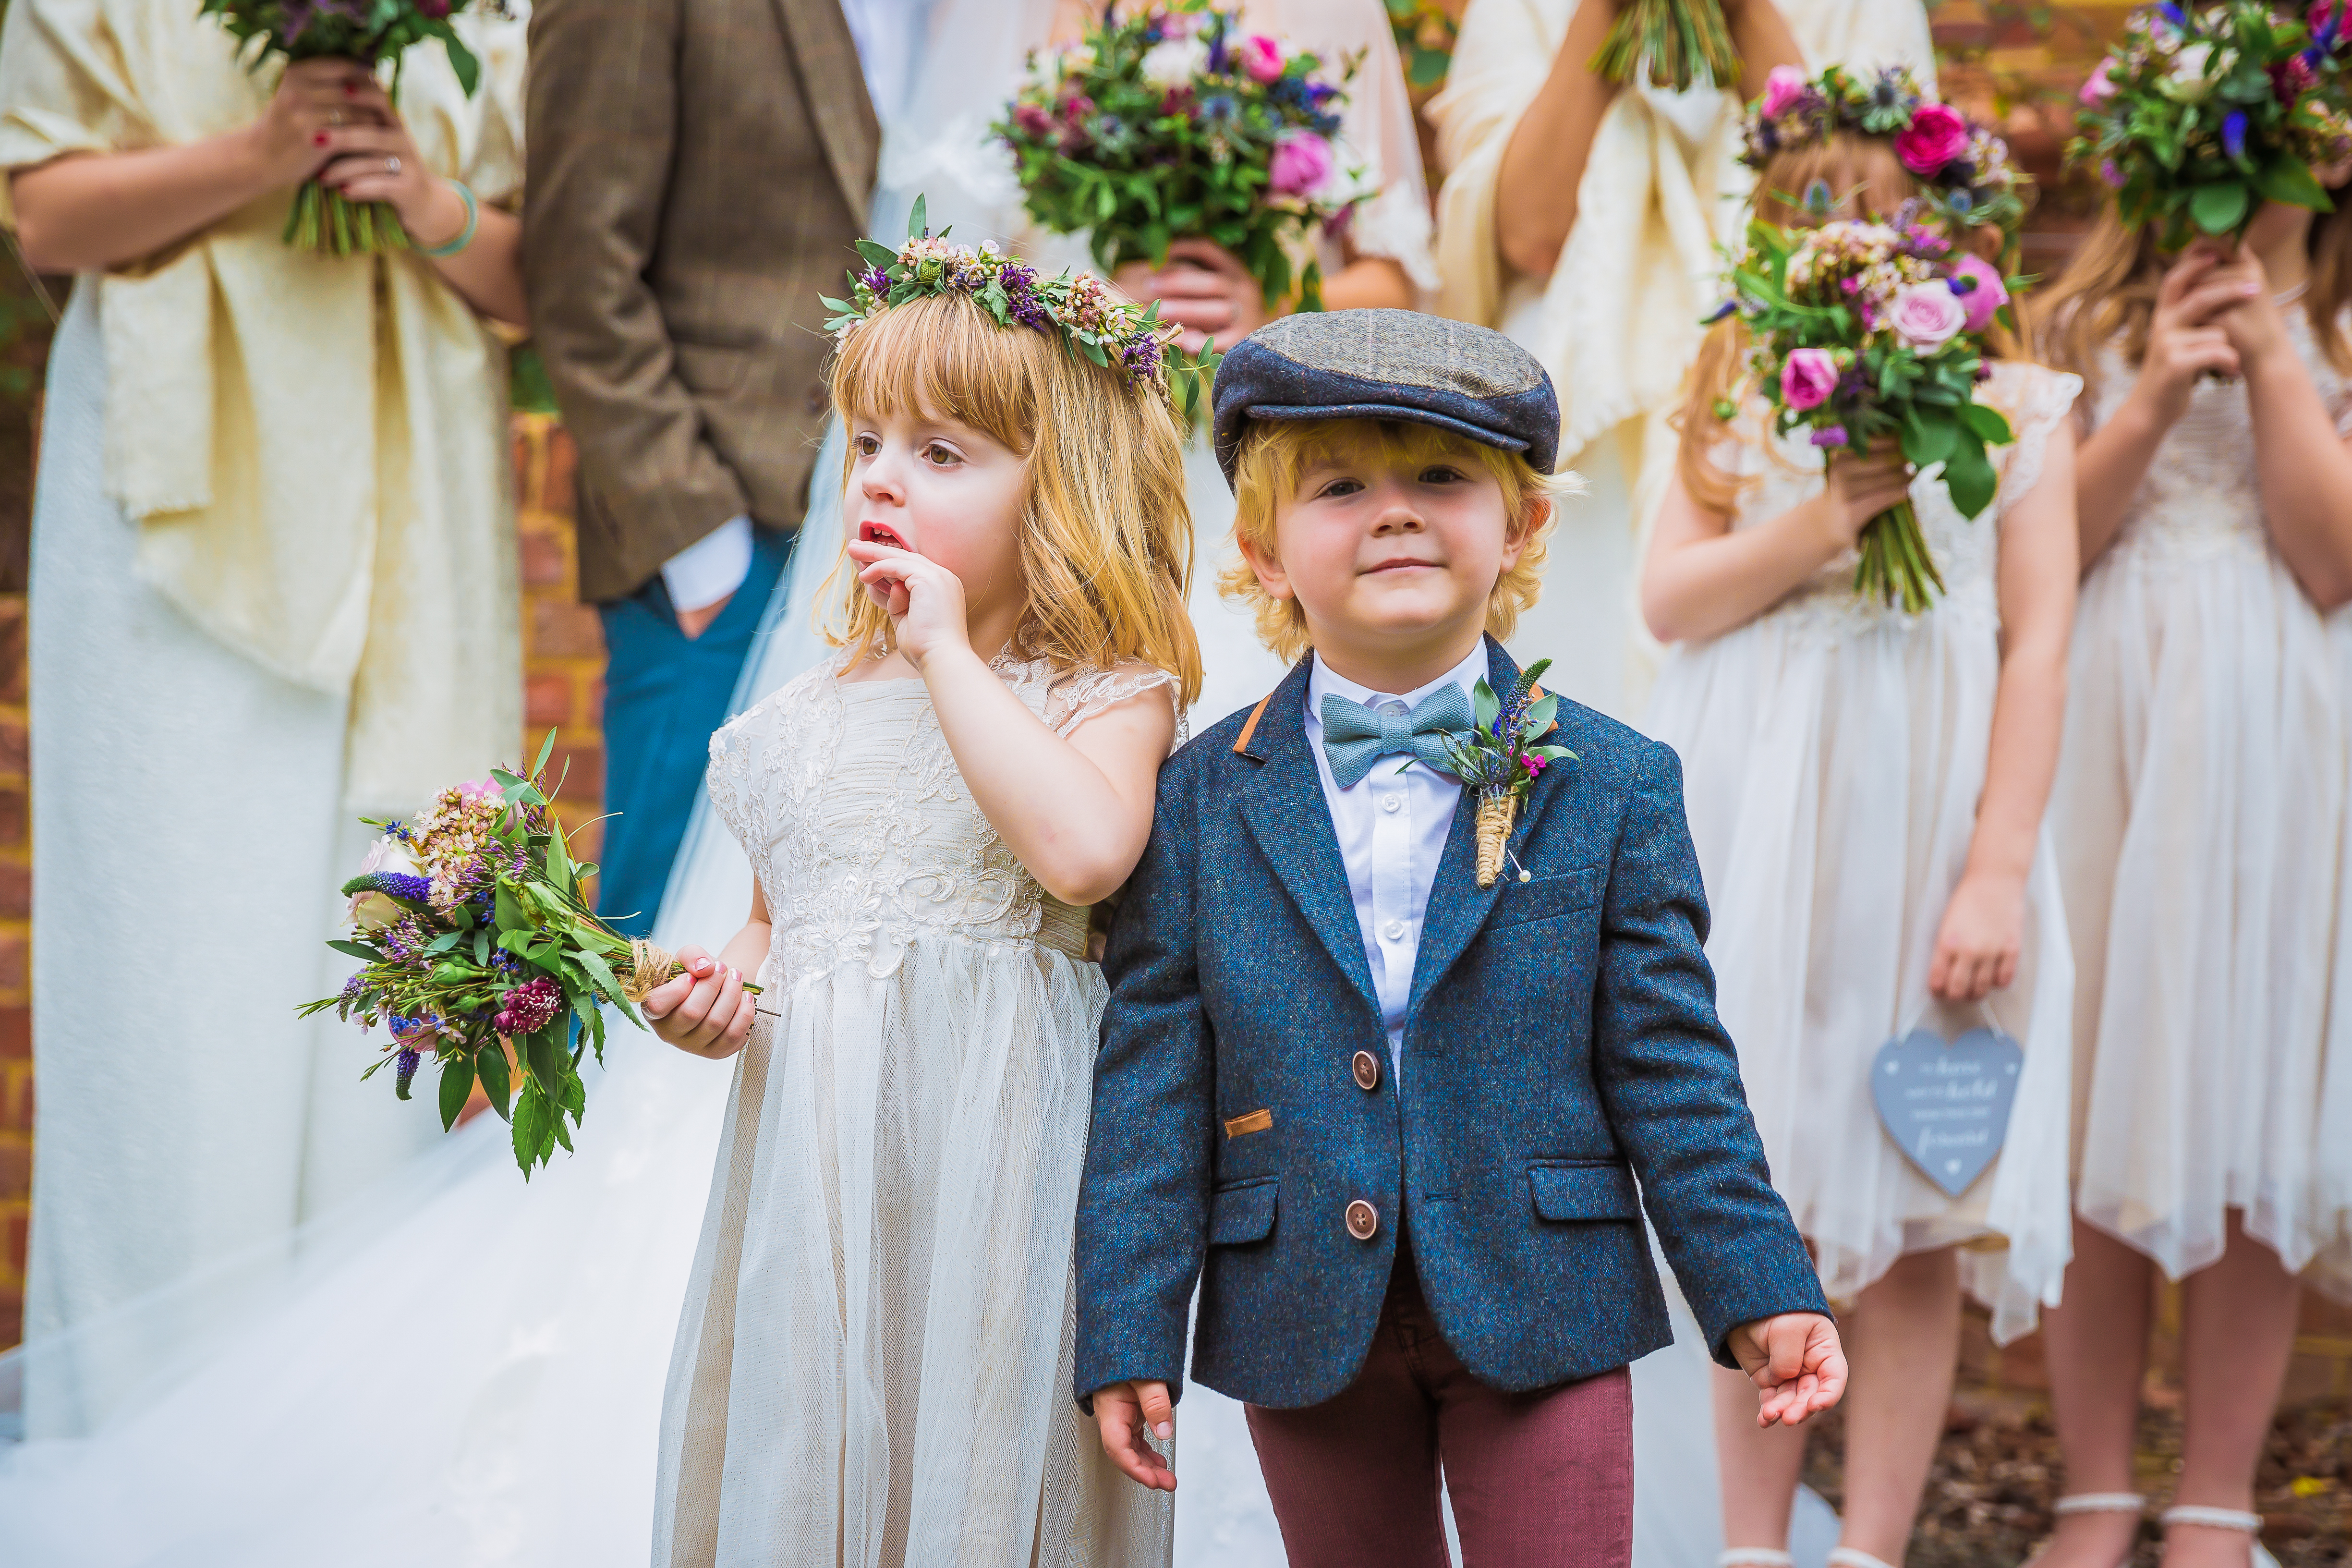 Kids in wedding attire | Source: Shutterstock